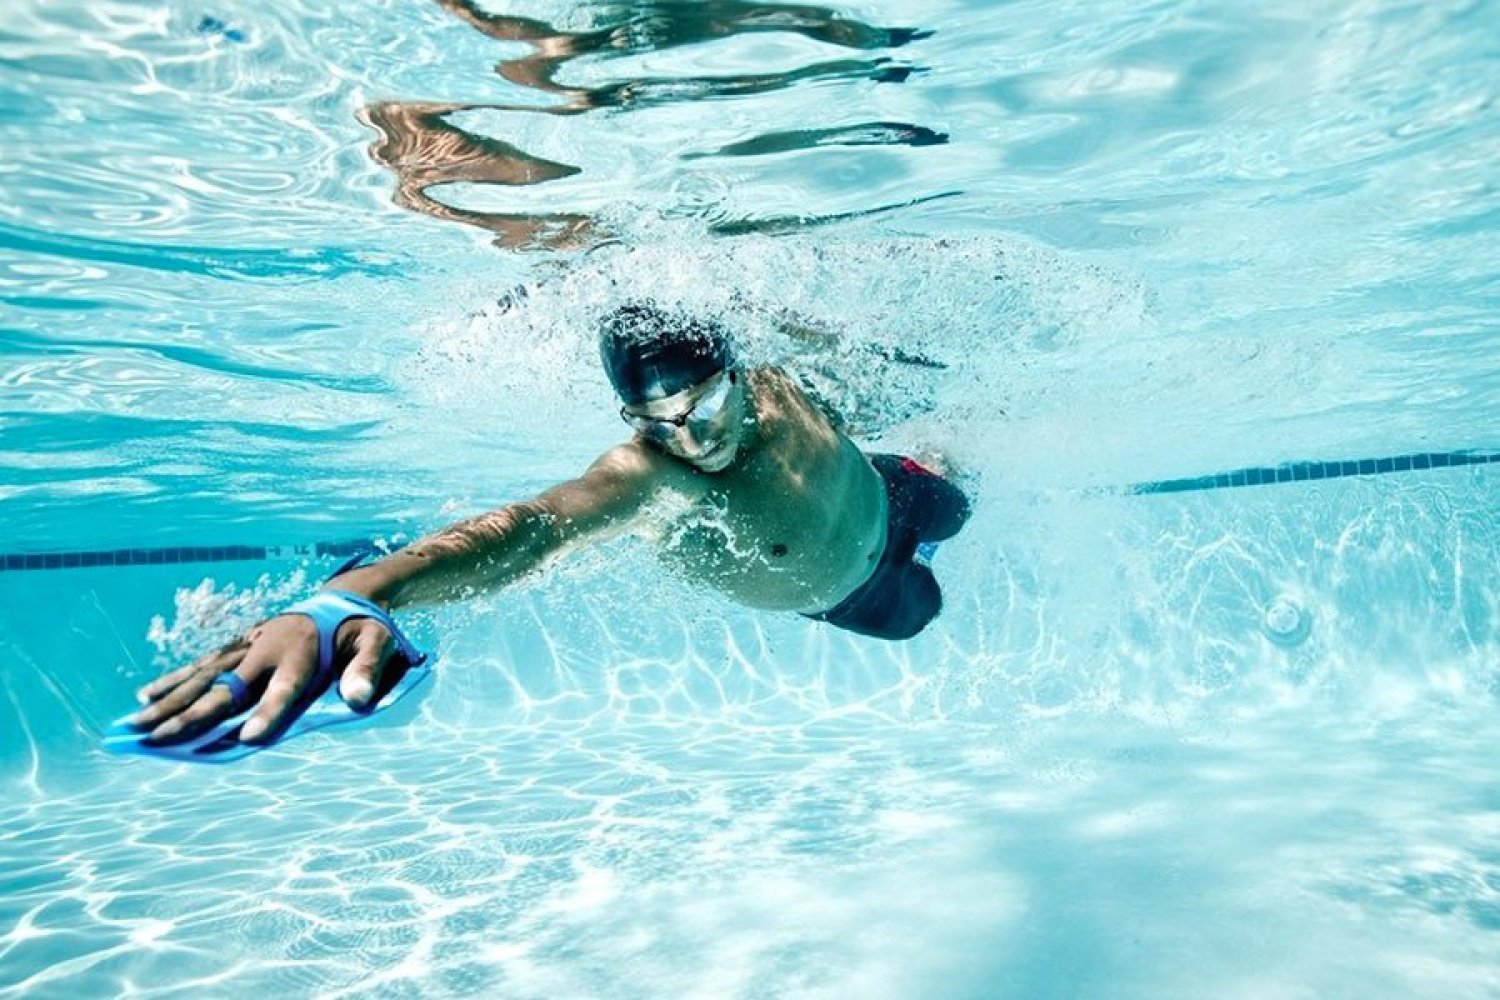 Как человек научился плавать по воде